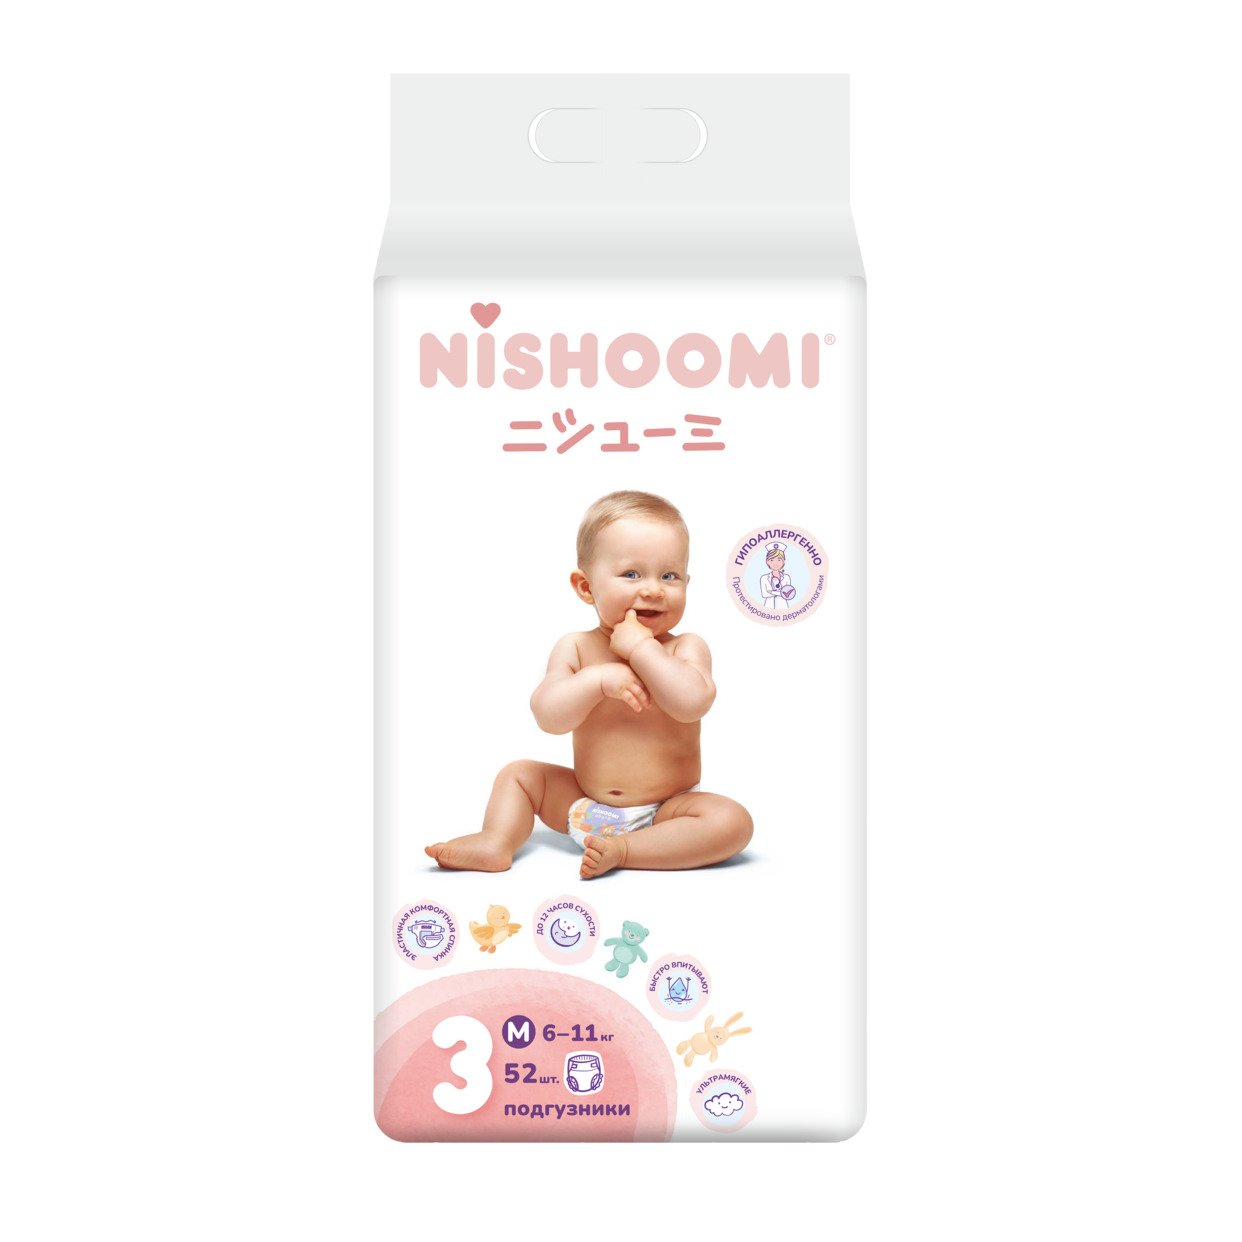 Акция в Пятерочке на Изделия санитарно-гигиенические разового использования для ухода за детьми Nishoomi подгузники детские одноразовые. Размер Макси (М (3)), для детей весом 6-11 кг, 52 штуки в уп.